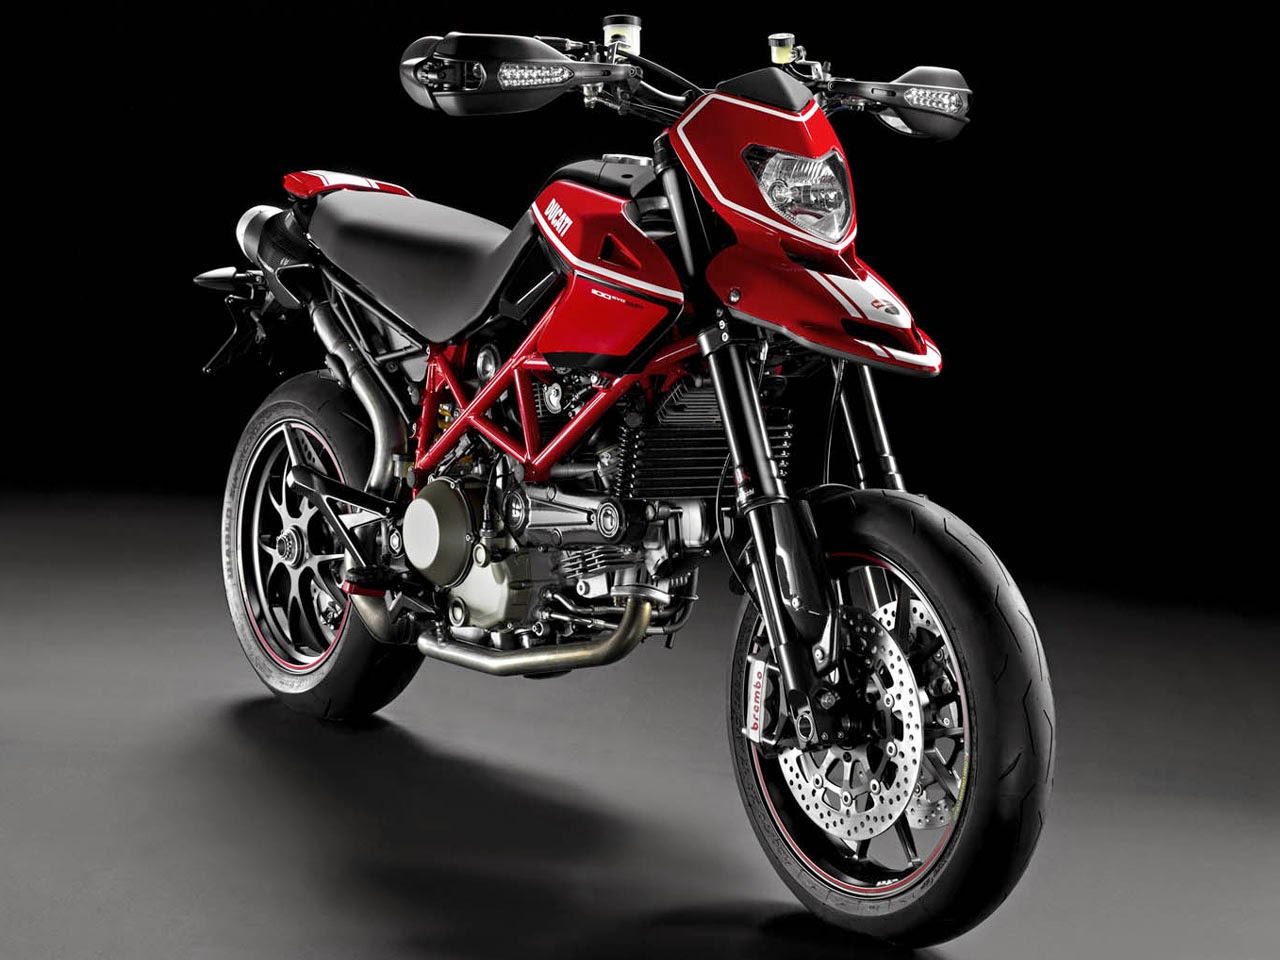 Koleksi Jual Motor Modifikasi Ducati Terbaru Dan Terlengkap